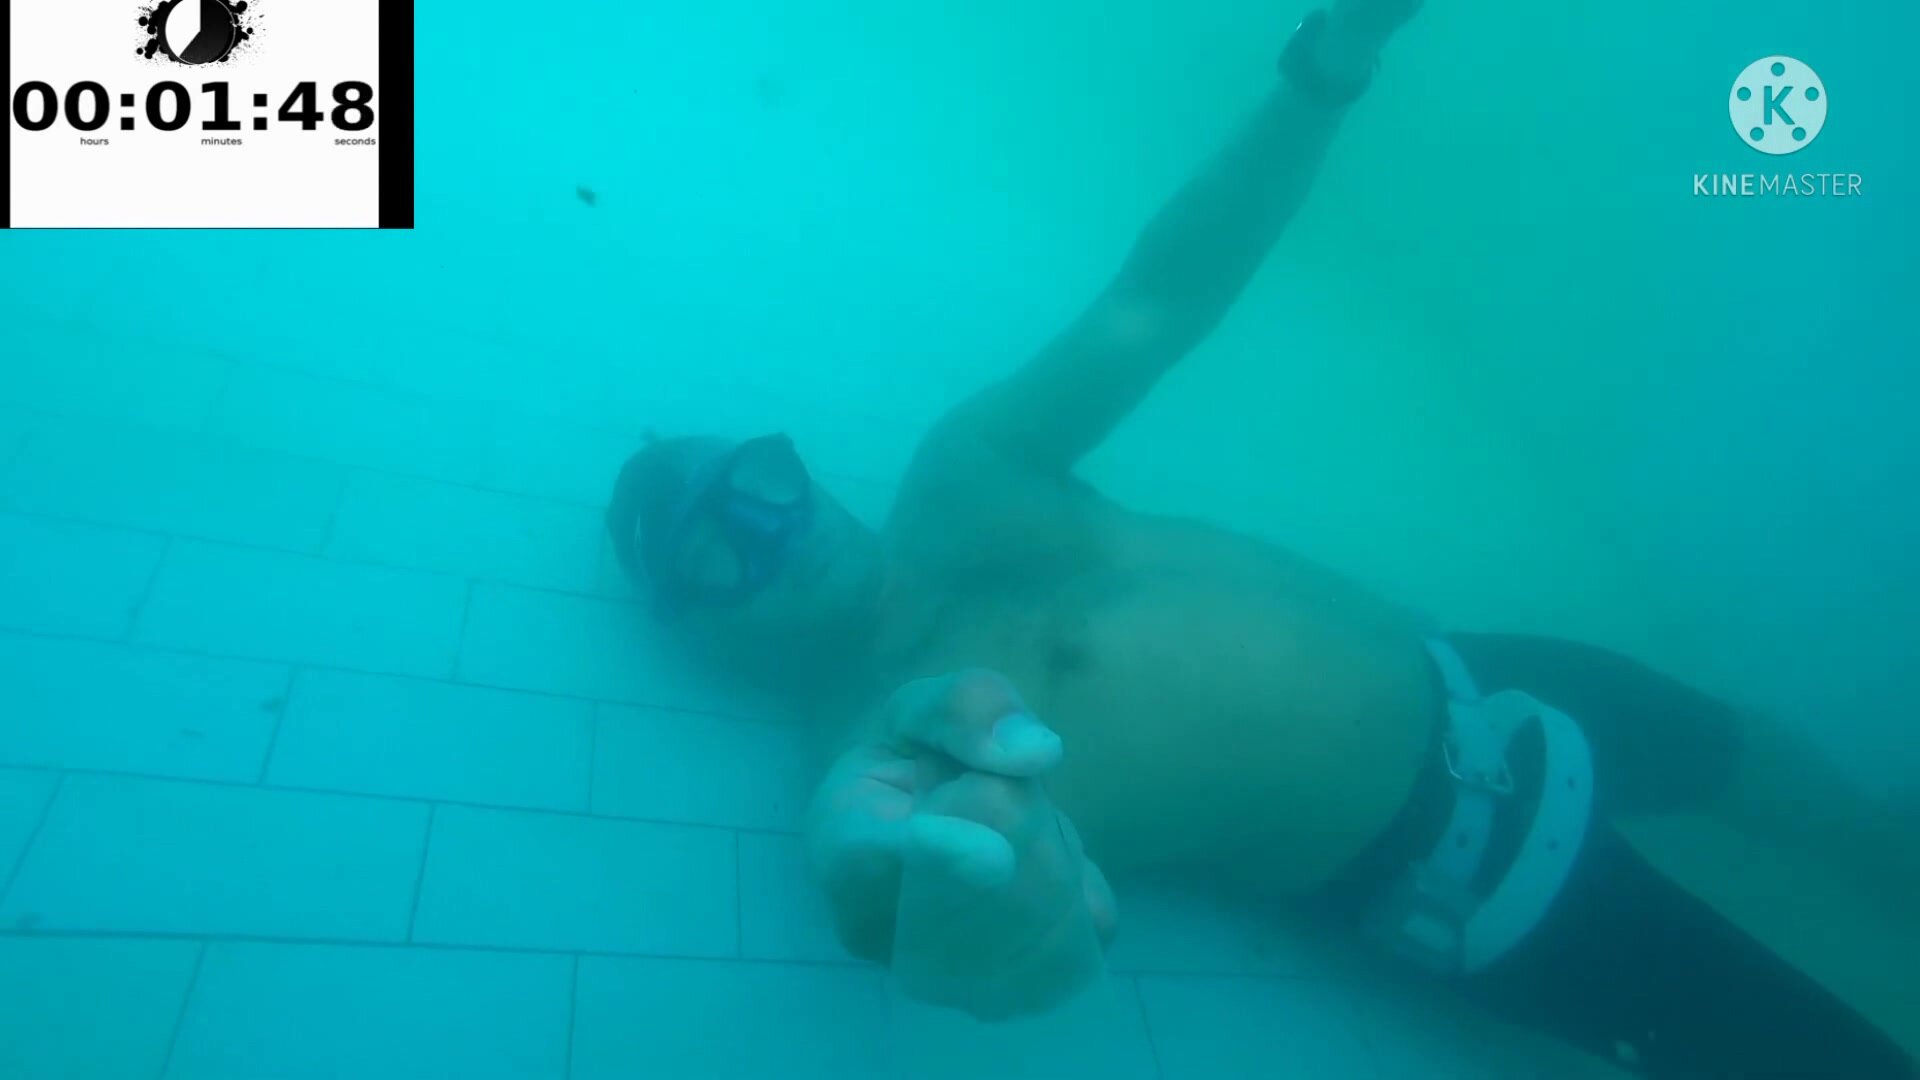 Kareem and friend breatholding underwater in pool